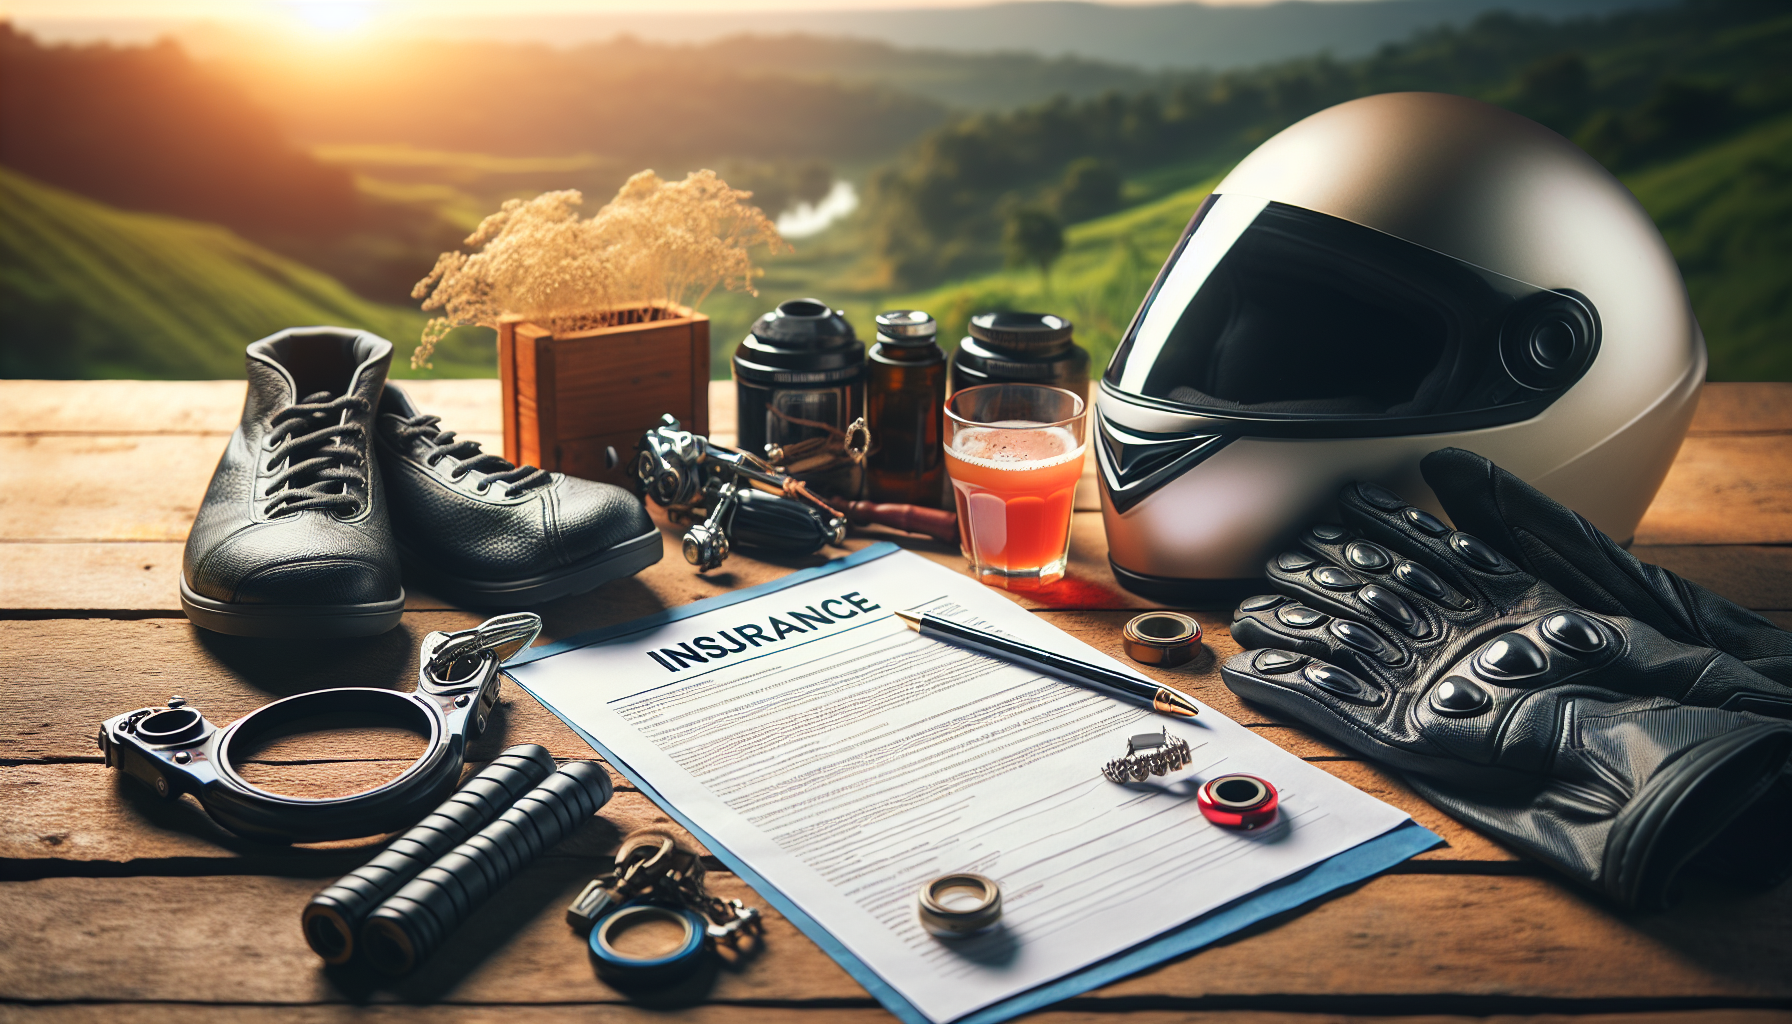 découvrez si l'assurance moto couvre vos accessoires avec cette exploration complète des garanties et des protections disponibles.